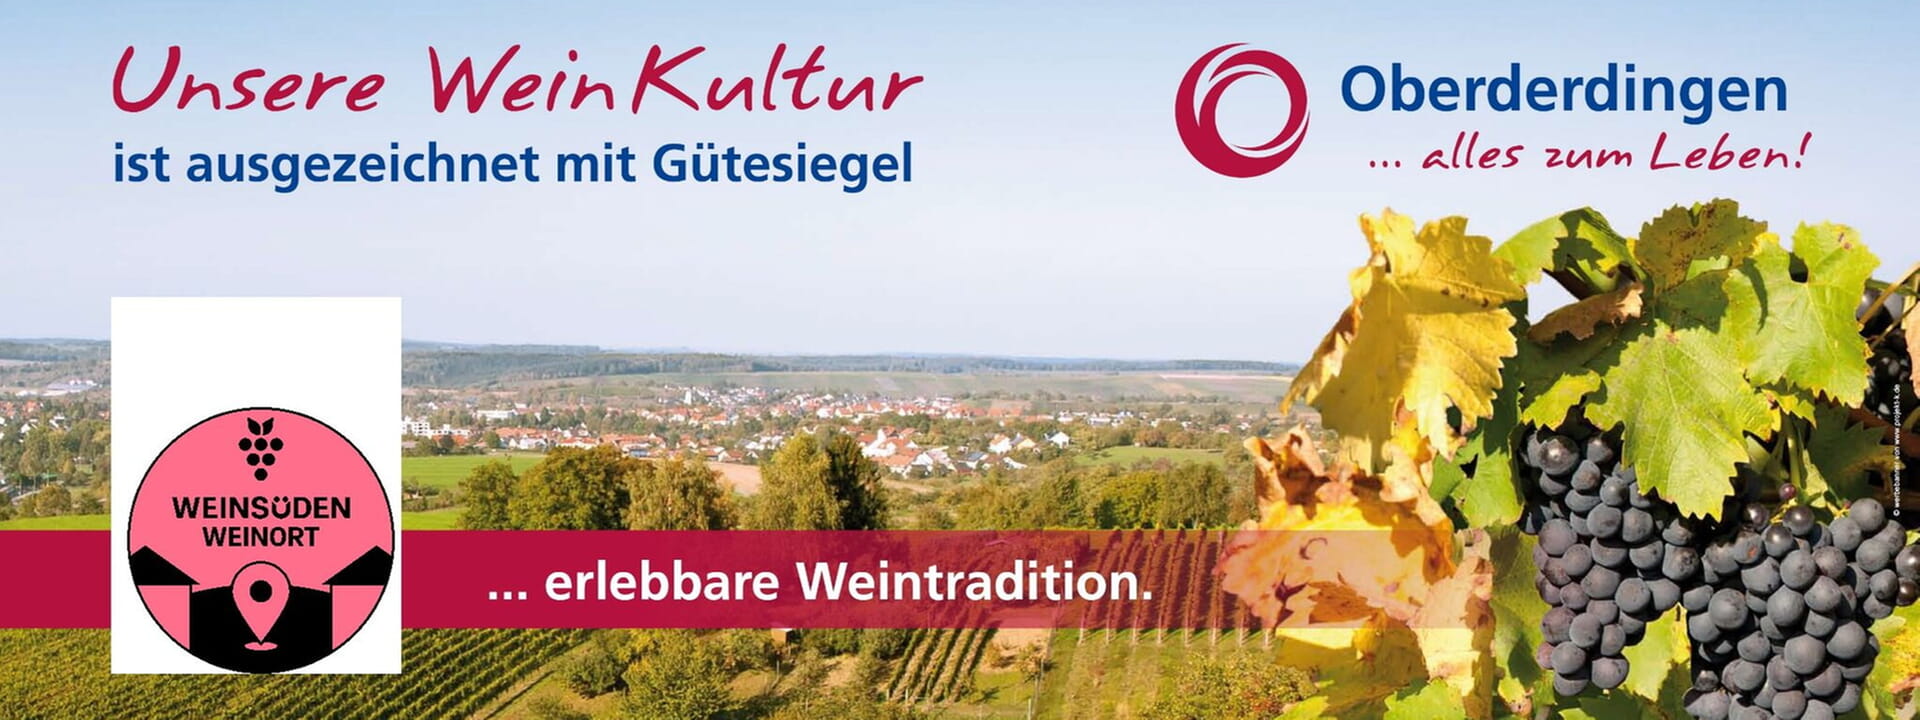 Weinregion mit Weintradition in Oberderdingen